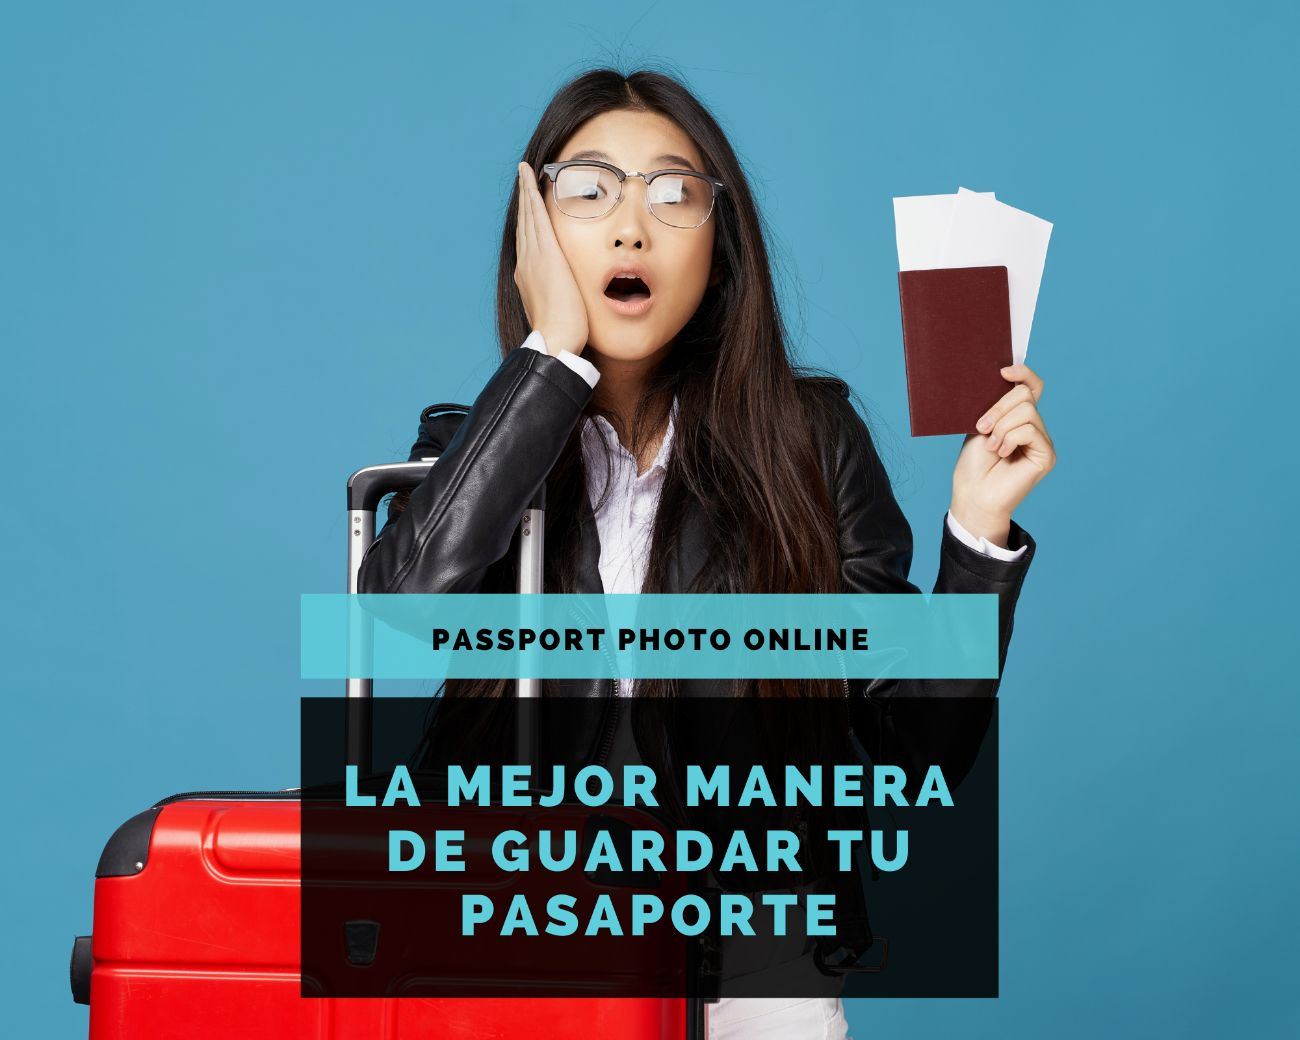 Una chica preparada para su viaje parece sorprendida, con su mano en la cara. ¿Cómo guardar tu pasaporte mientras viajas?